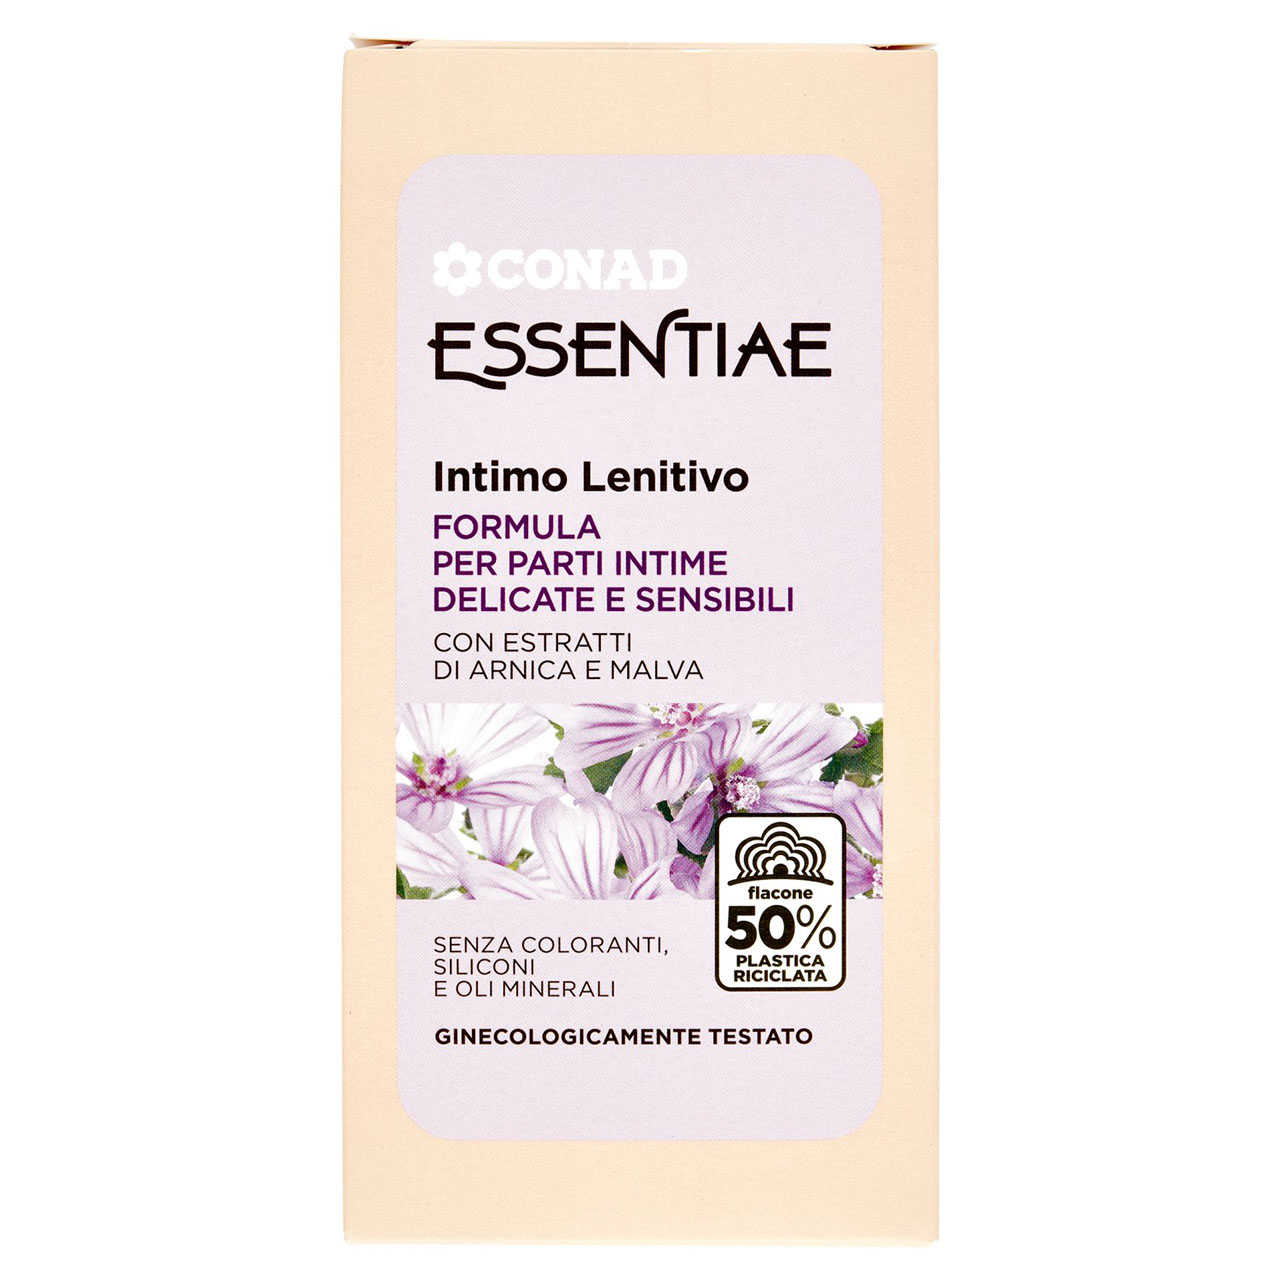 Essentiae Intimo Lenitivo 300 ml Conad online